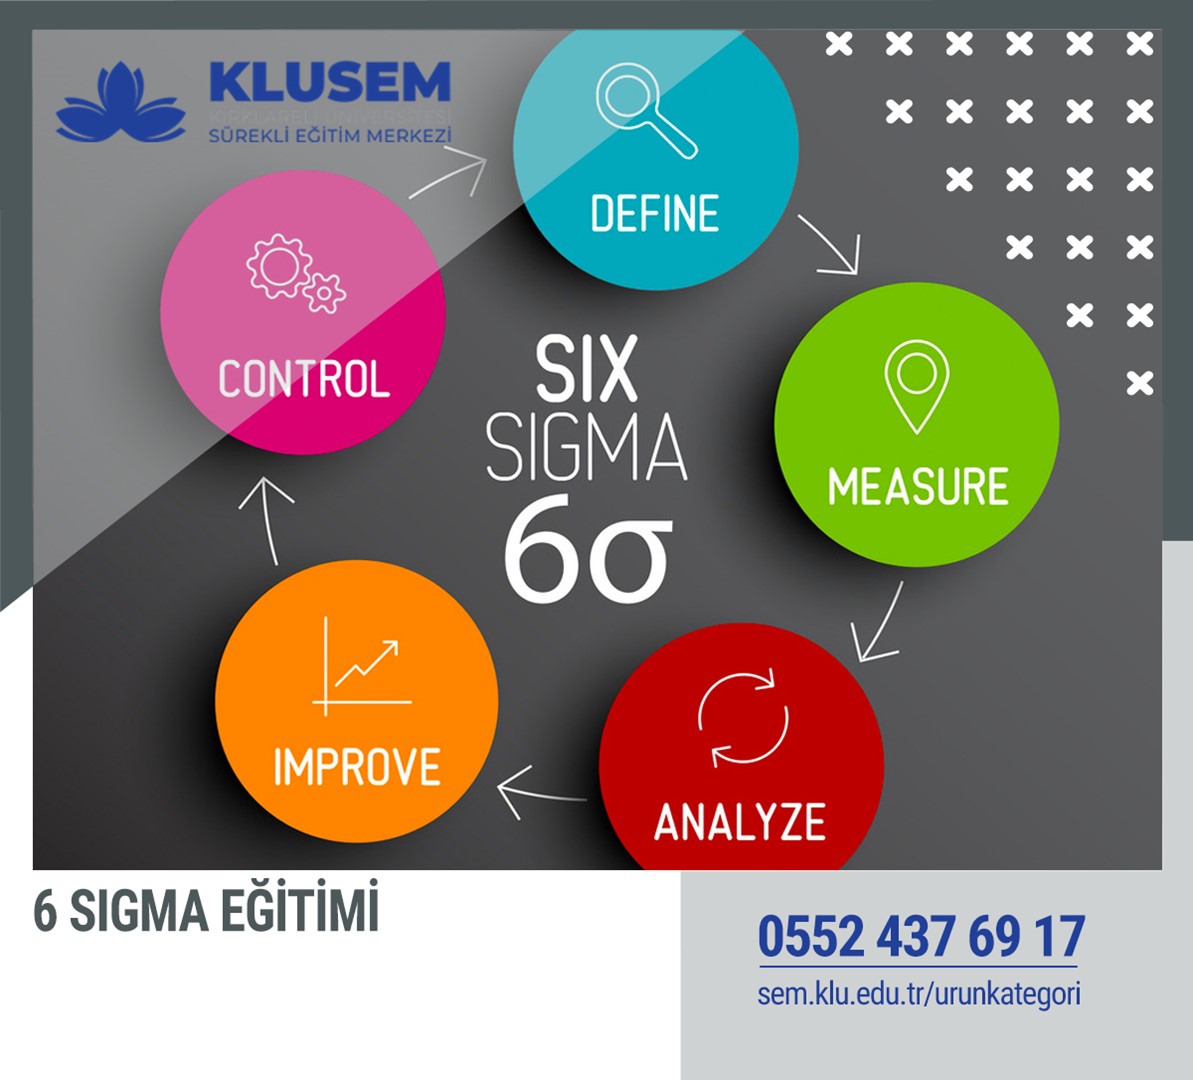 Главный сигма. 6 Sigma. Концепция Six Sigma. Система 6 сигм. 6 Сигм управление качеством.